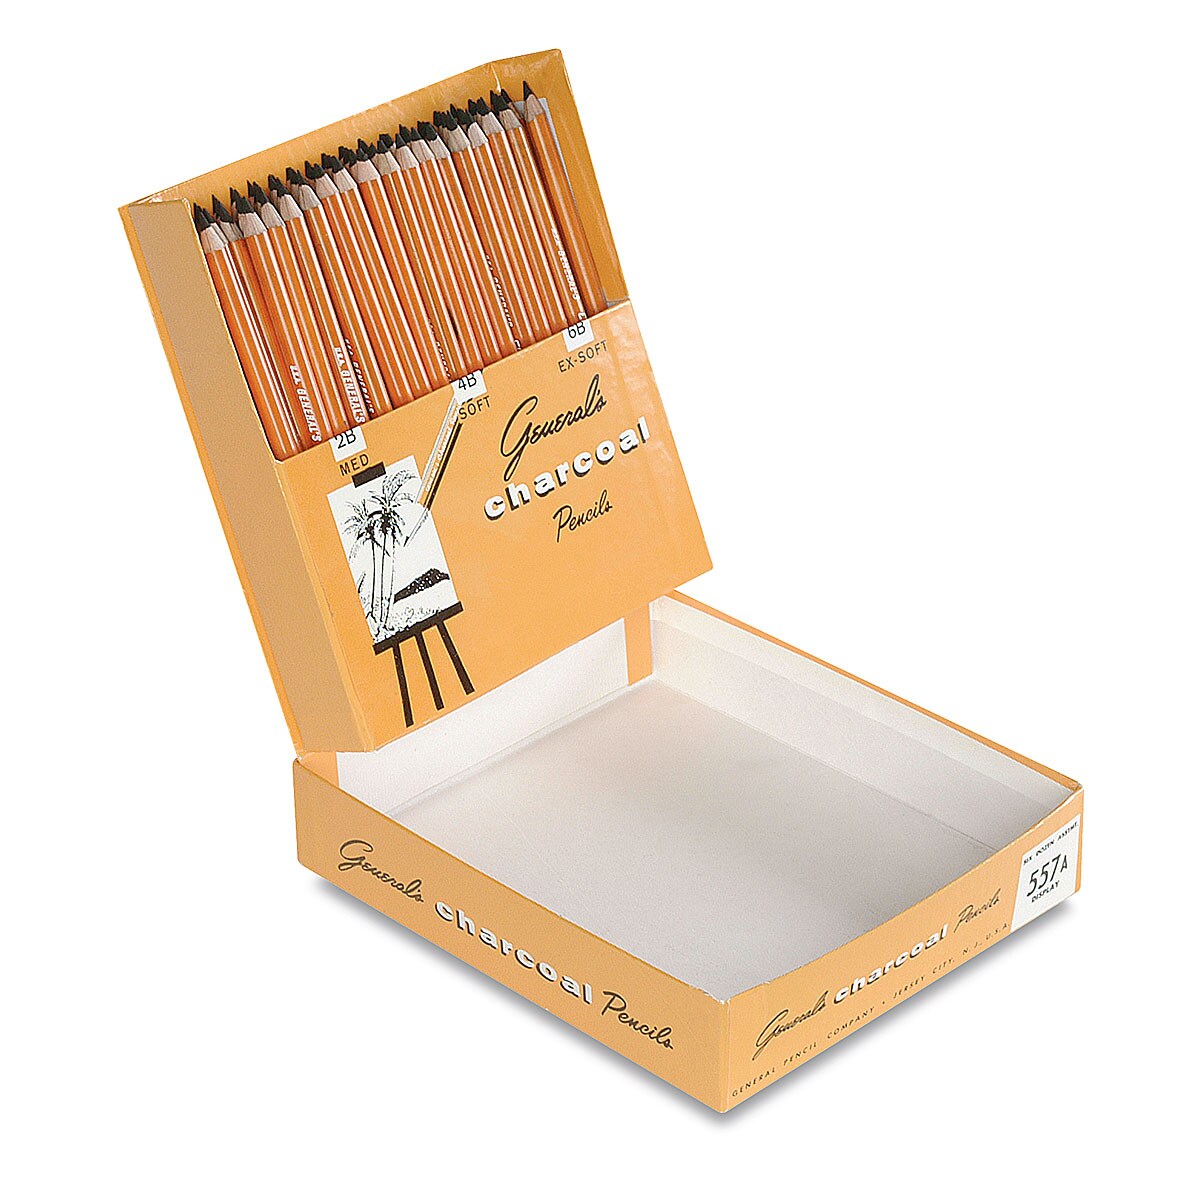 General&#x27;s Charcoal Pencils - Classroom Assortment, Set of 72